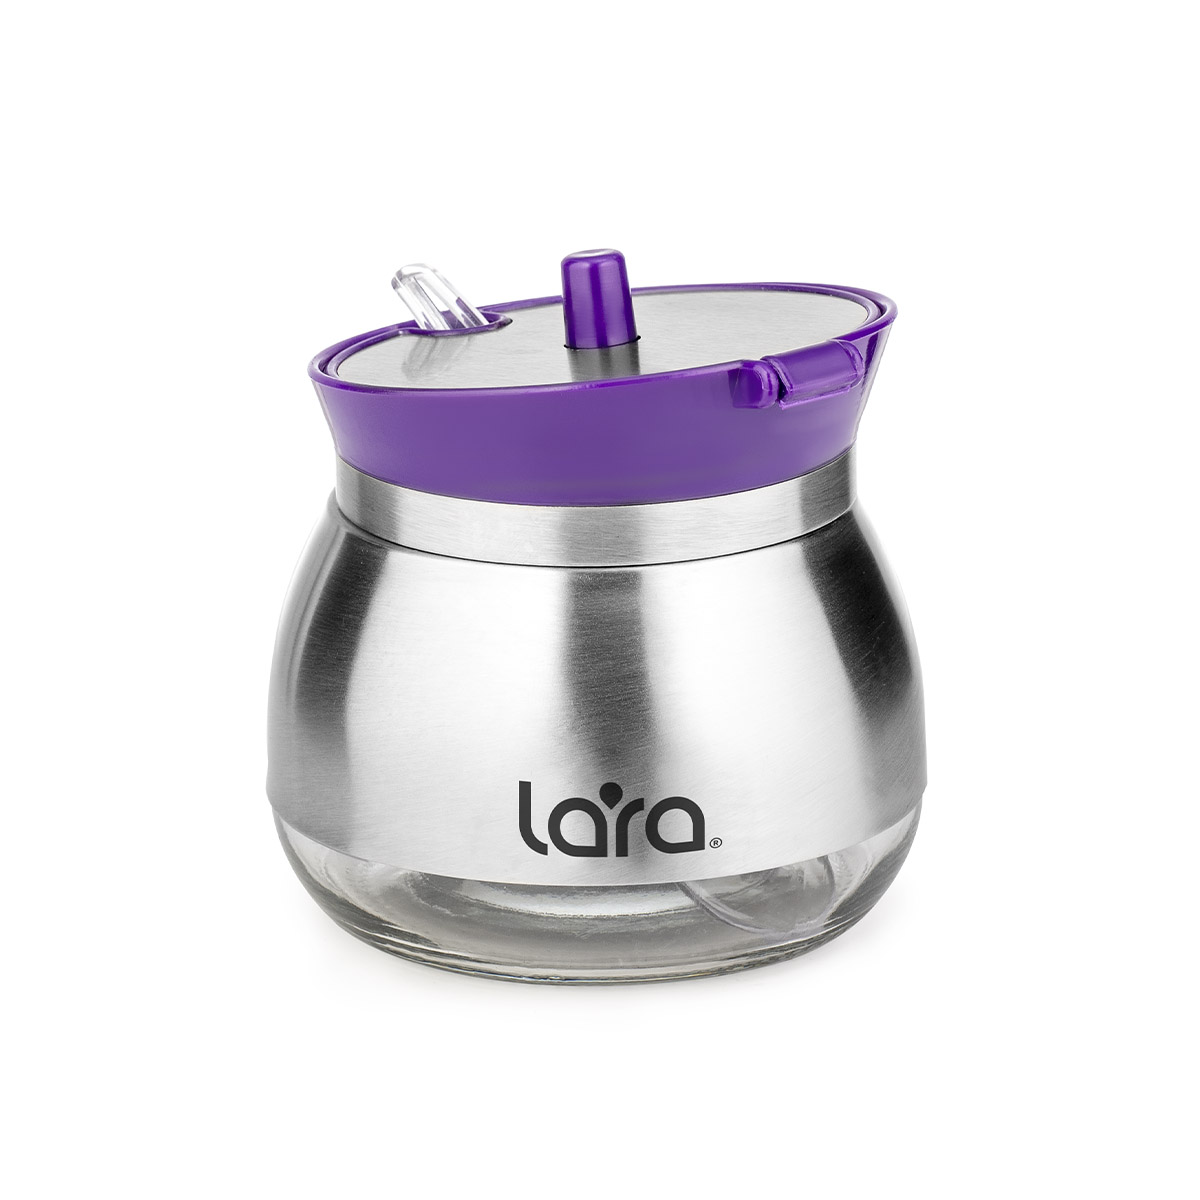 Сахарница LARA LR08-34 Violet с дозатором (фиолет) 300мл, ЛОЖЕЧКА В ПОДАРОК, стекло, сталь